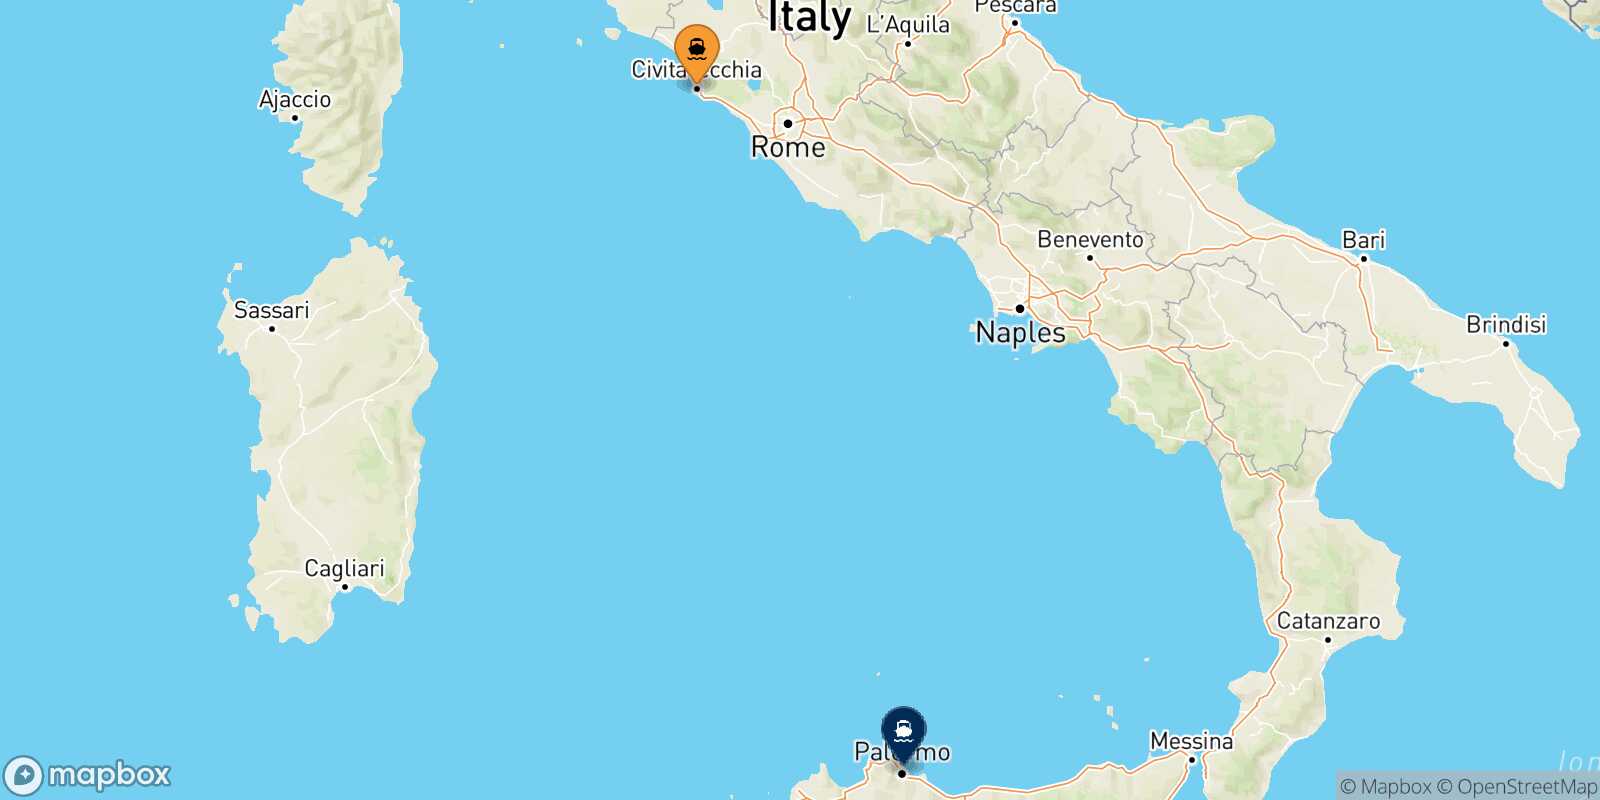 Civitavecchia Palermo route map